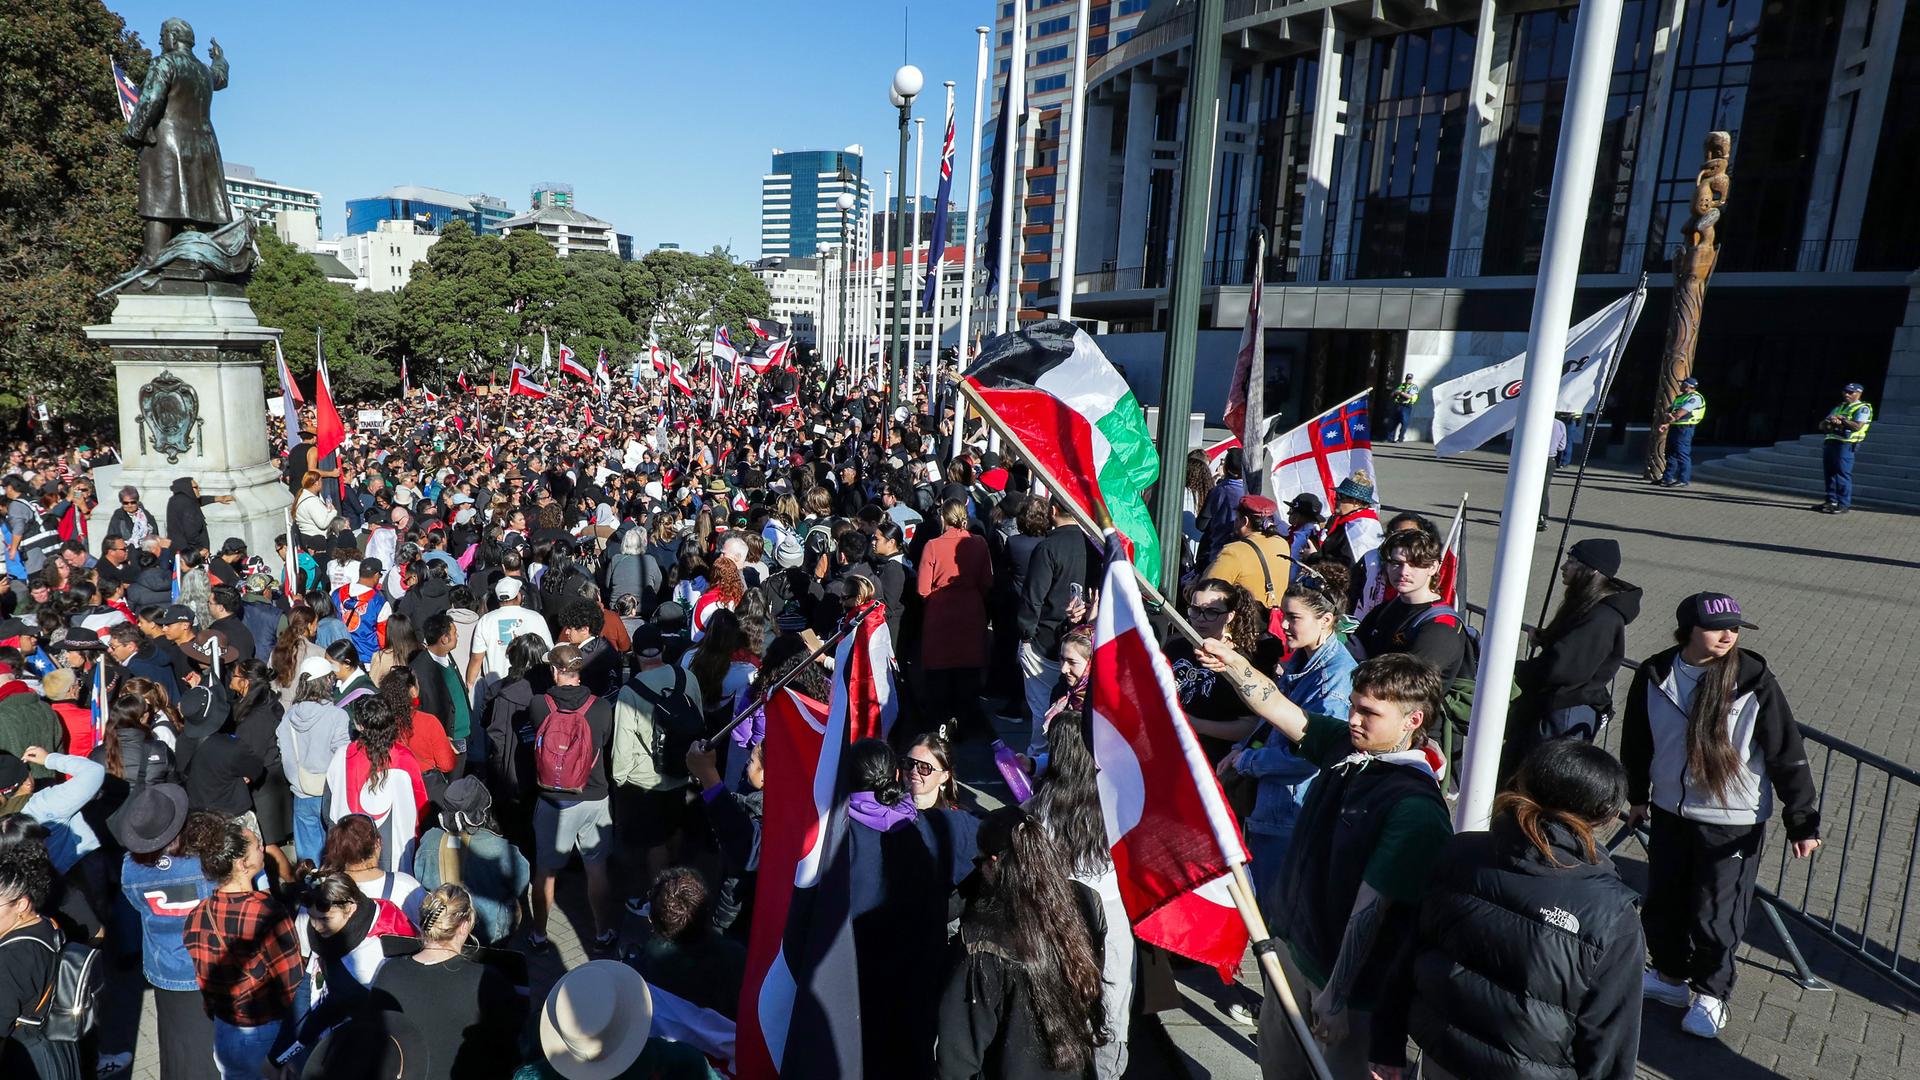 Viele Menschen versammeln sich vor dem Parlament in Wellington. Sie tragen die Maori-Fahne.